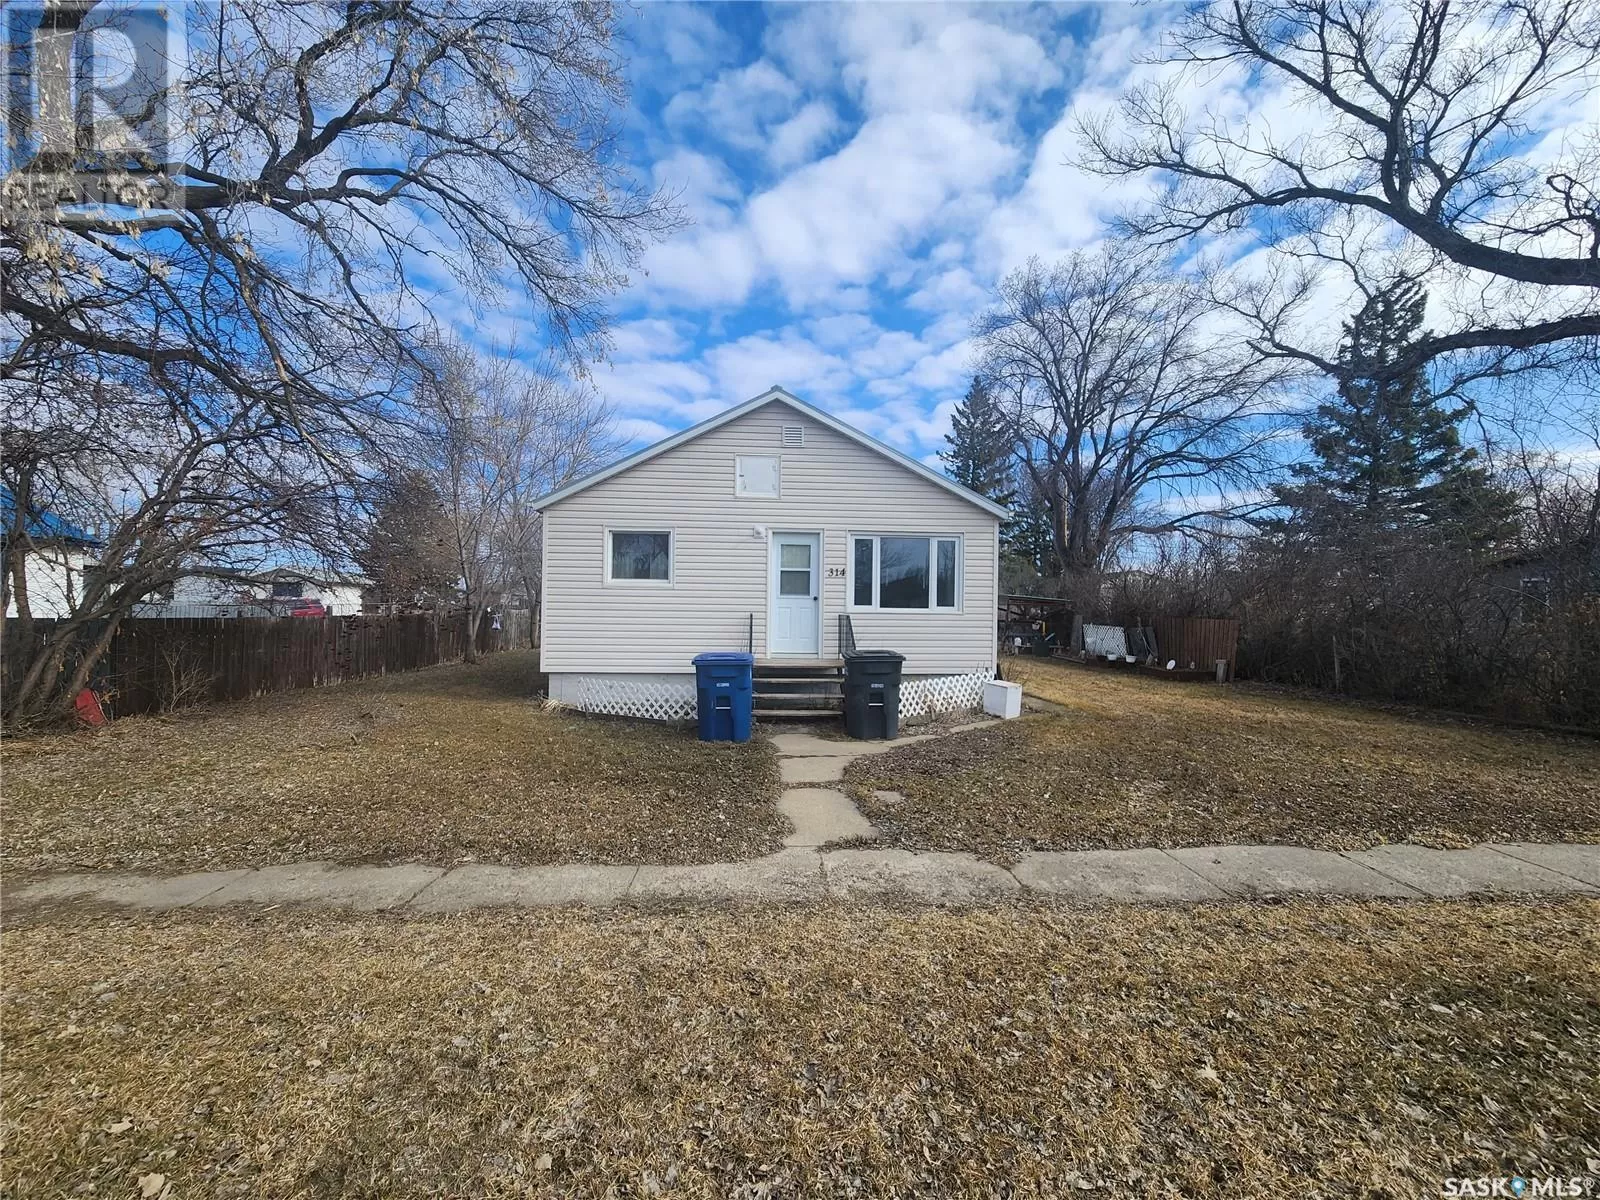 House for rent: 314 Main Street, Kipling, Saskatchewan S0G 2S0